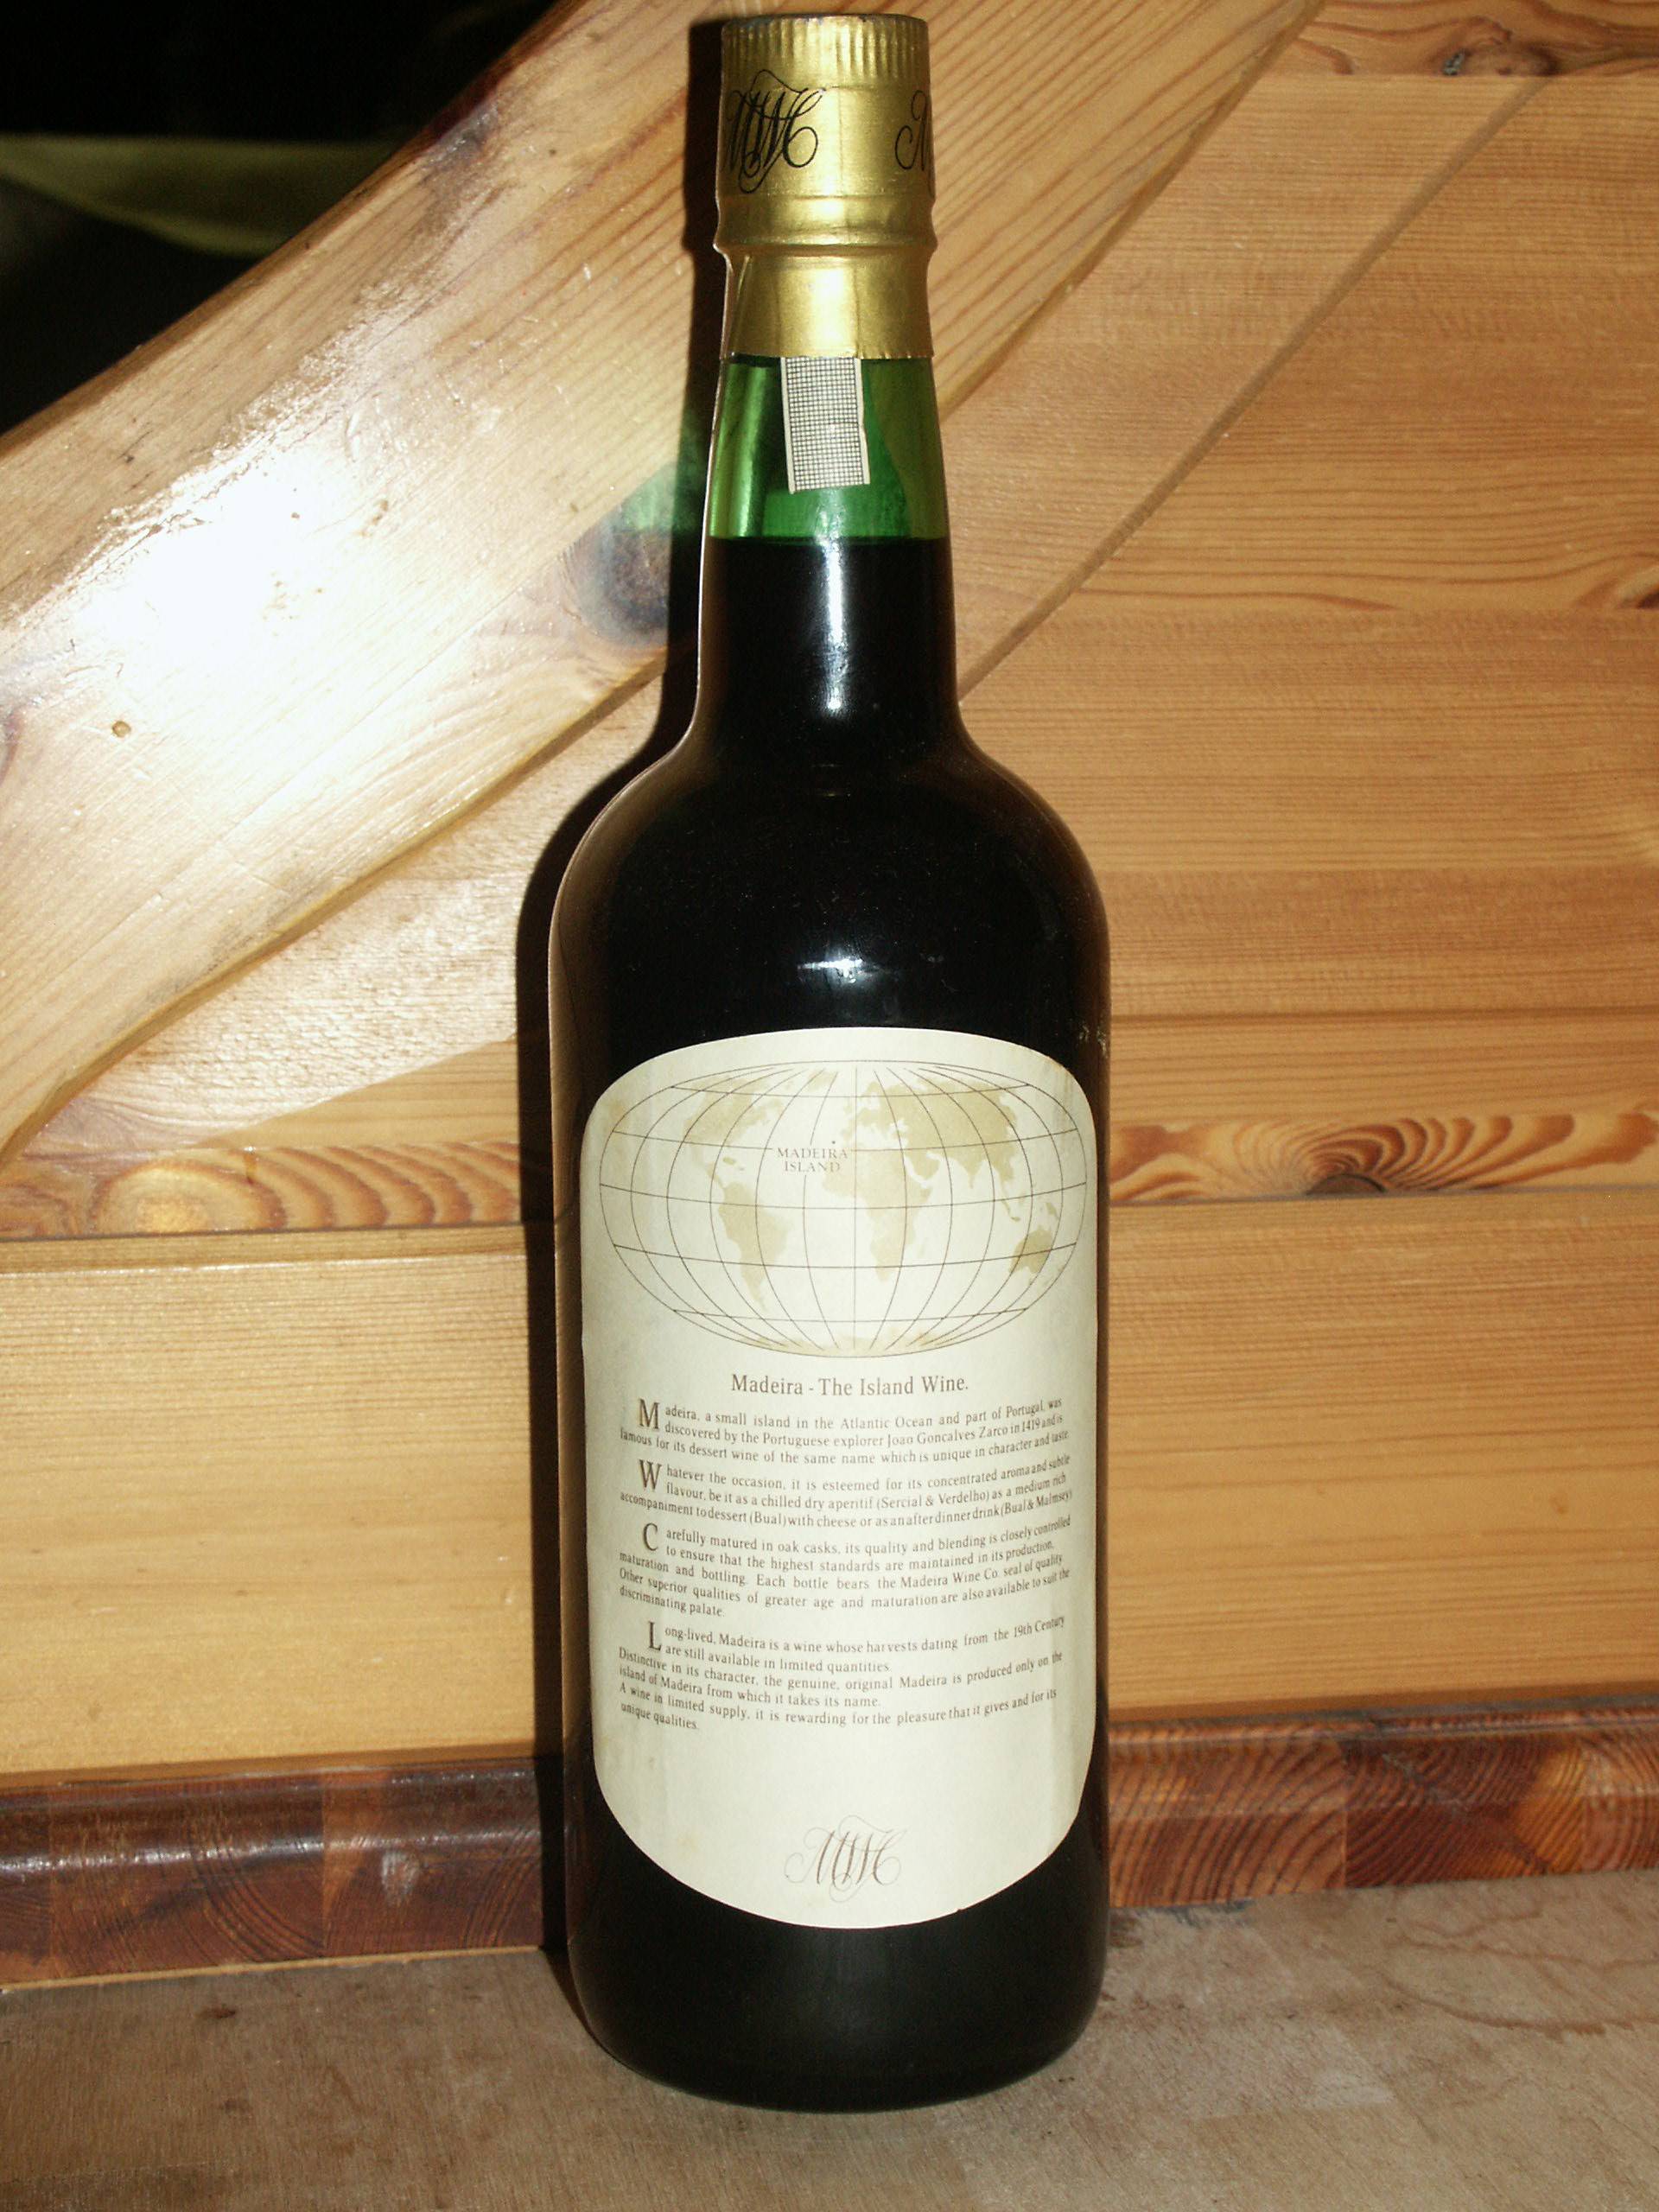 Вино мадера- португальский продукт с особенной крепостью